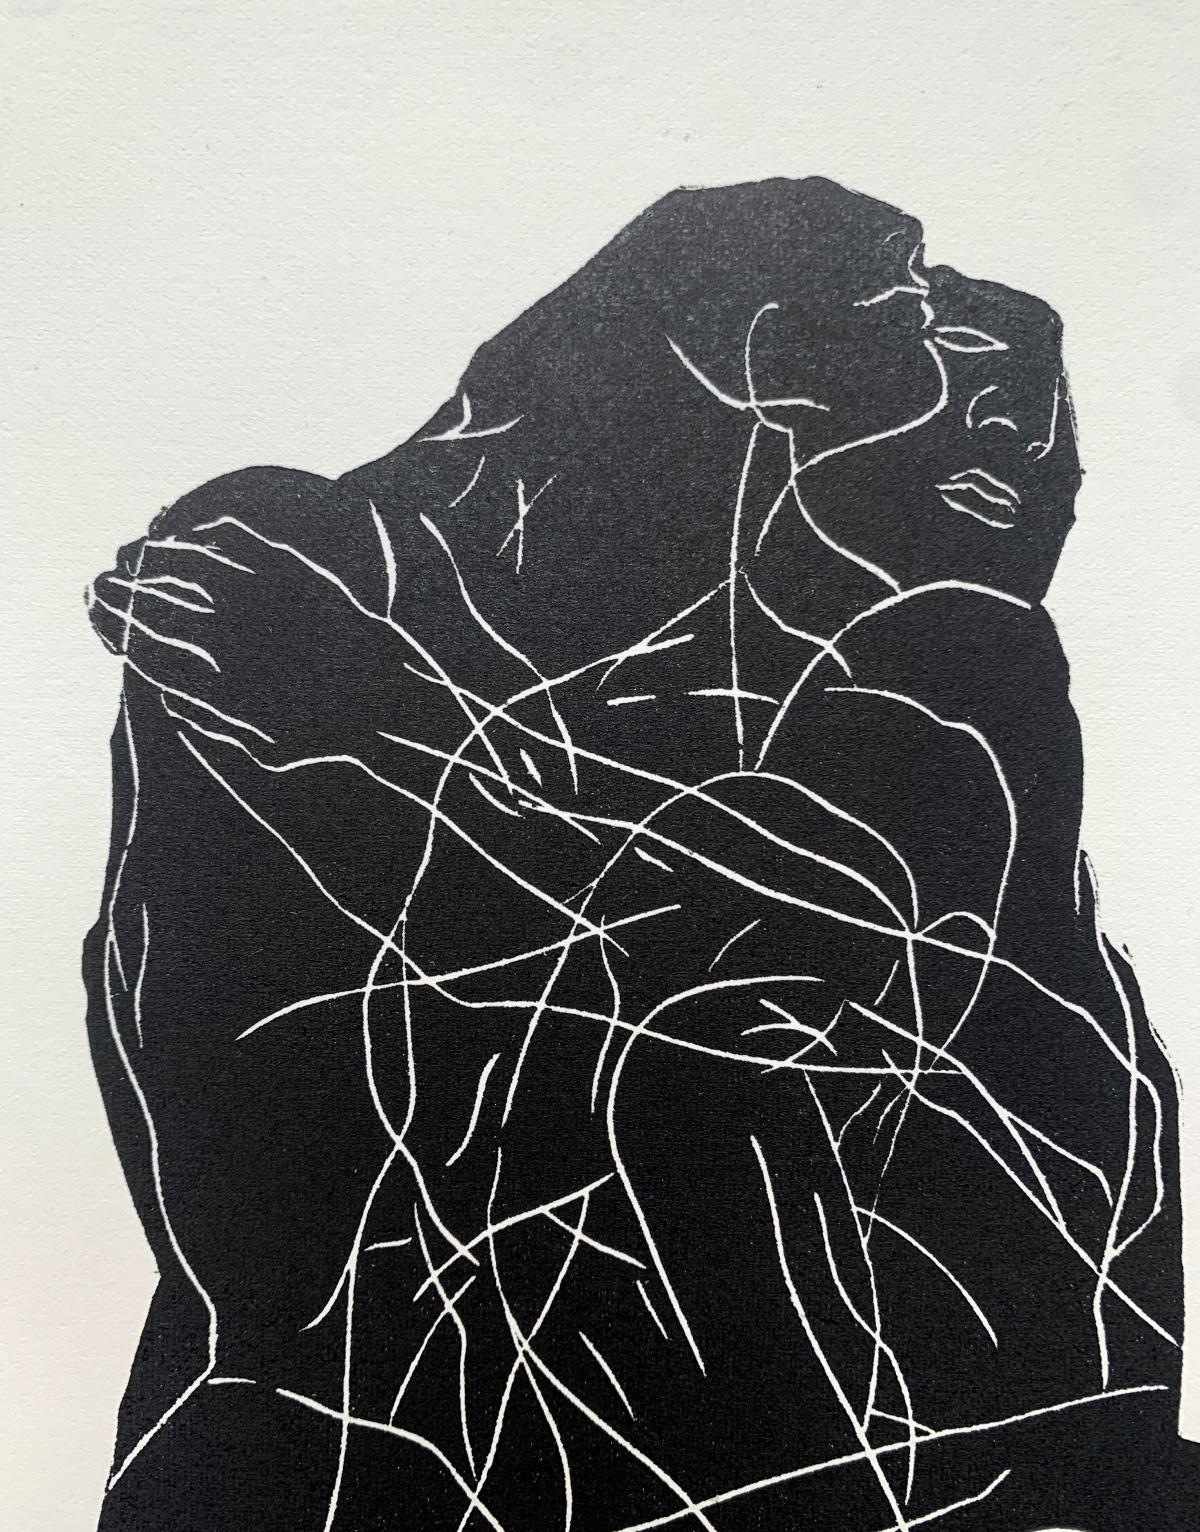 Incarnation 4. Junger Künstler, figurativer Druck, Linolschnitt, Schwarz-Weiß, Polnische Kunst (Zeitgenössisch), Print, von Luiza Kasprzyk